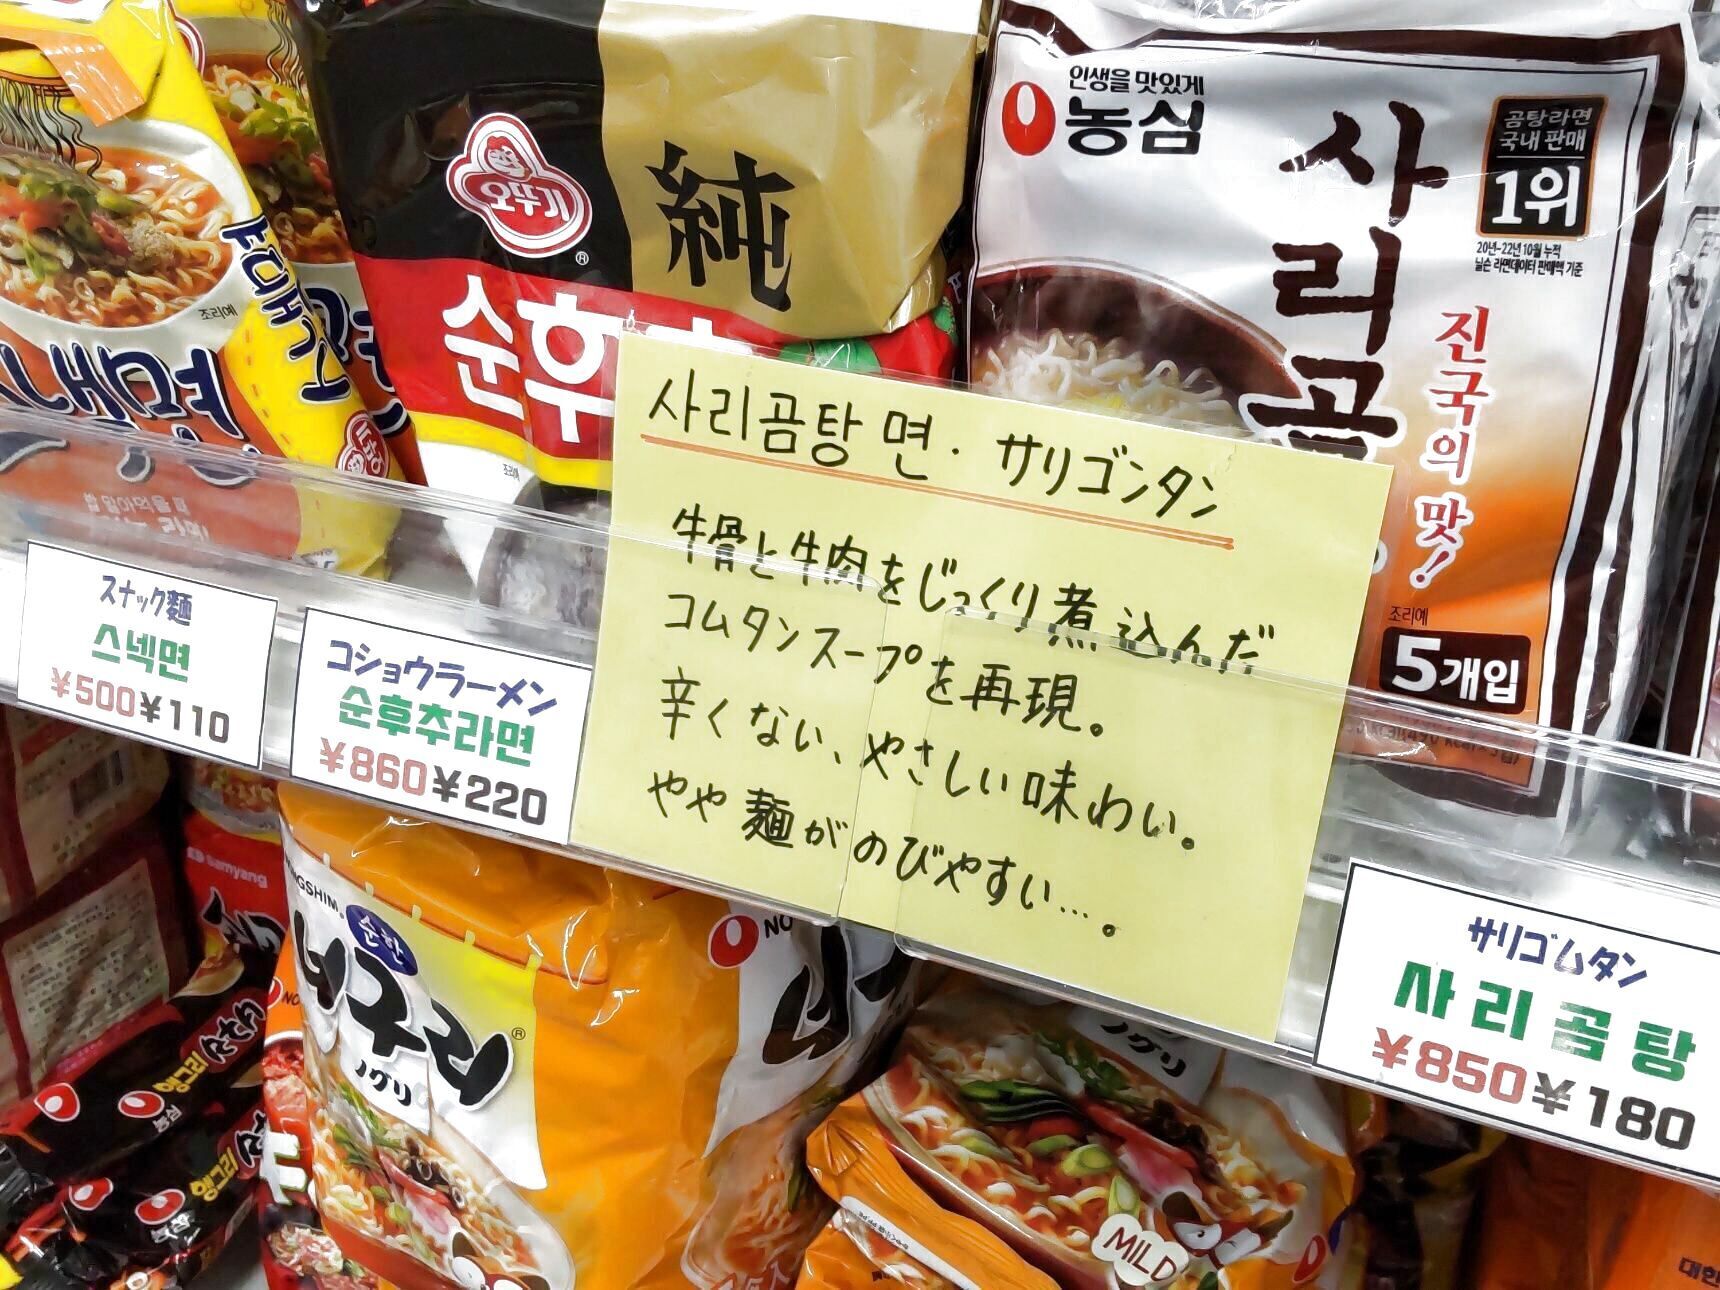 このようにお勧め商品には、日本語で説明が書かれていて分かりやすいんです